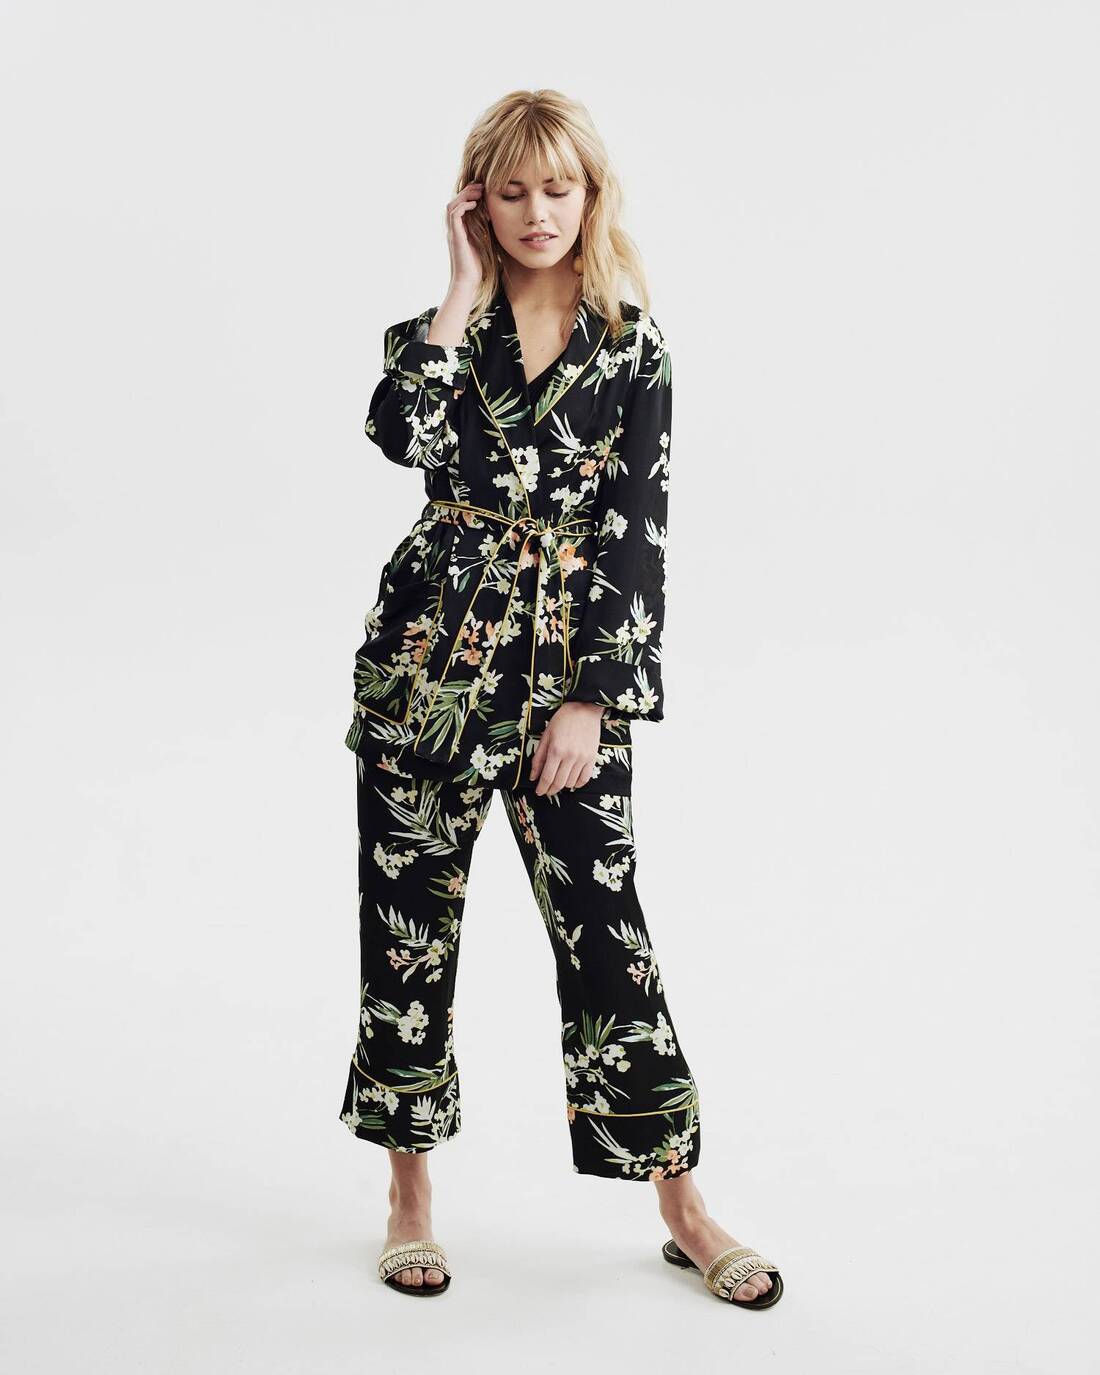 Printed pyjama style suit